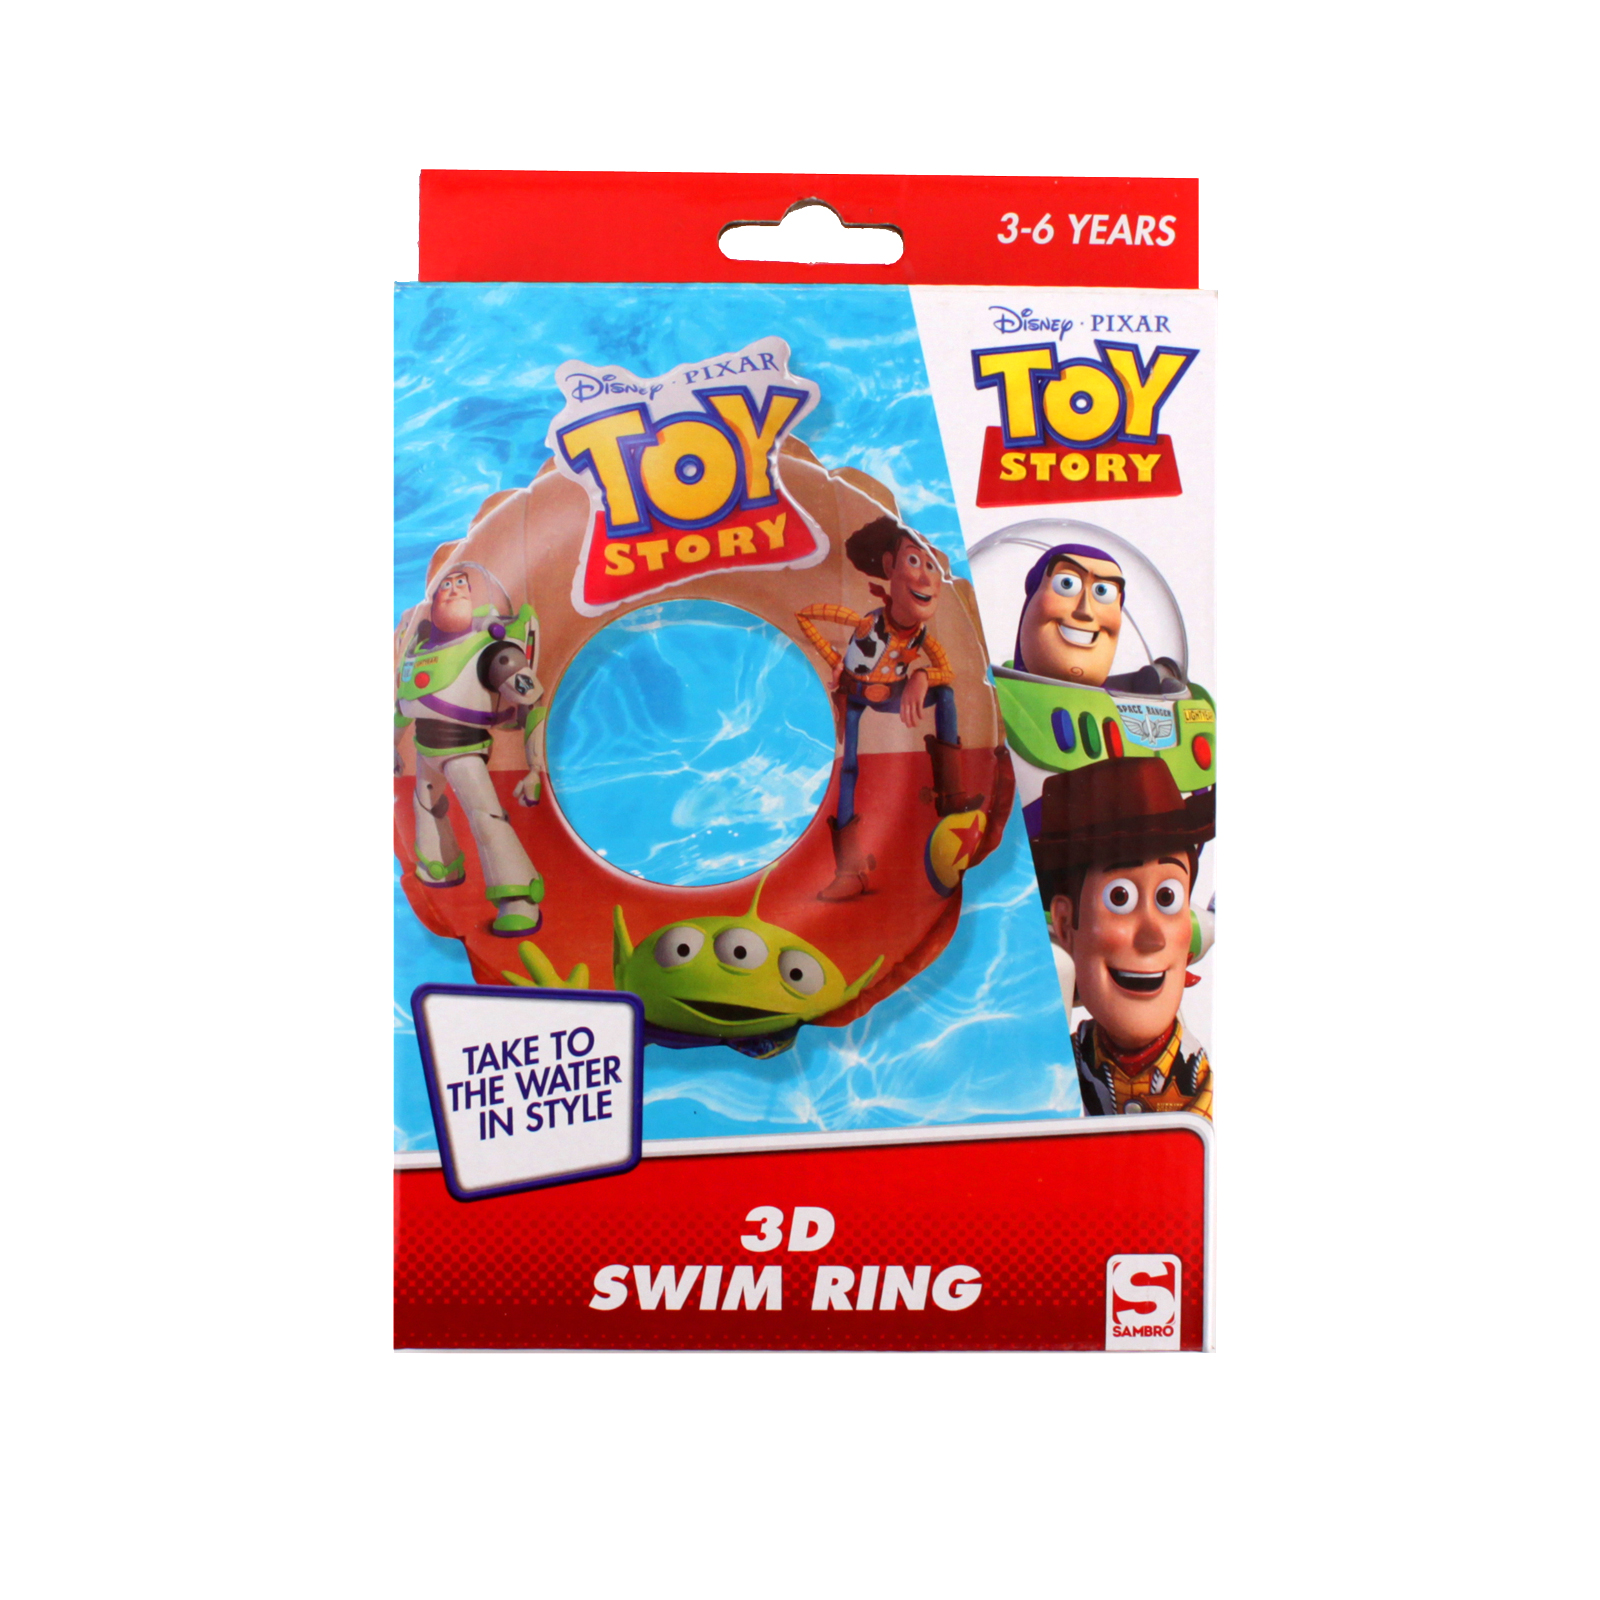 Toy Story 4 Swim Ring 